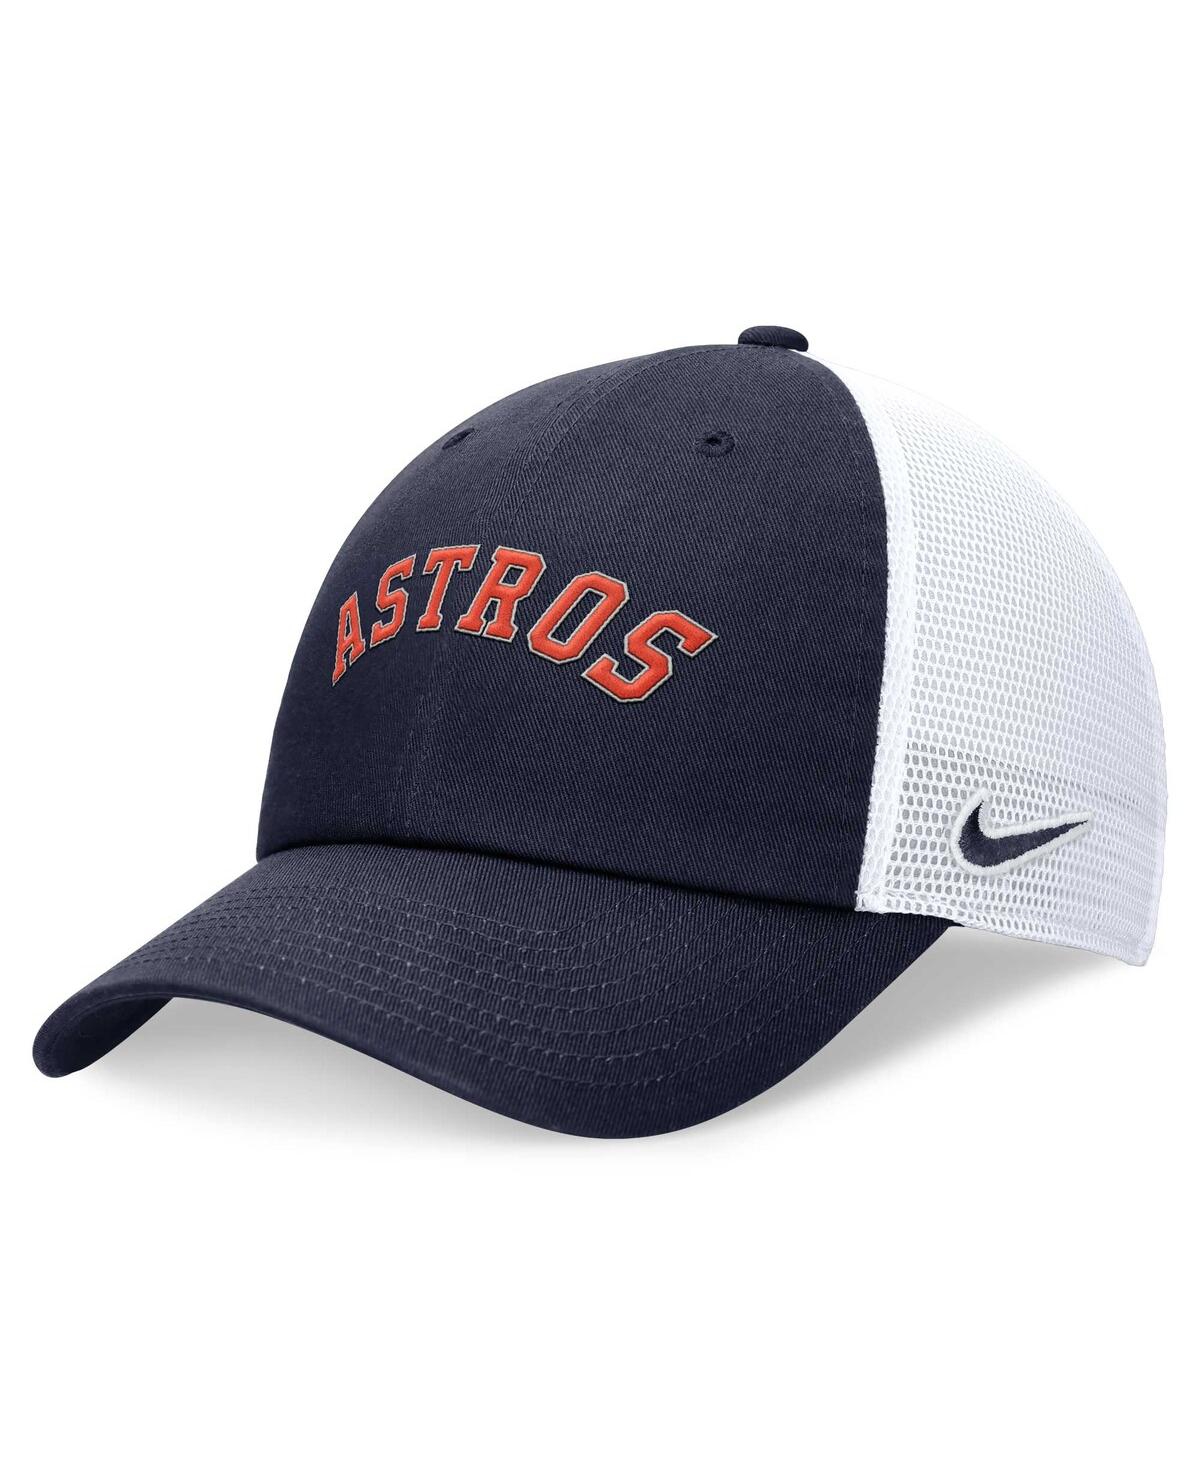 Men's Nike Navy Houston Astros Evergreen Wordmark Trucker Adjustable Hat - Navy